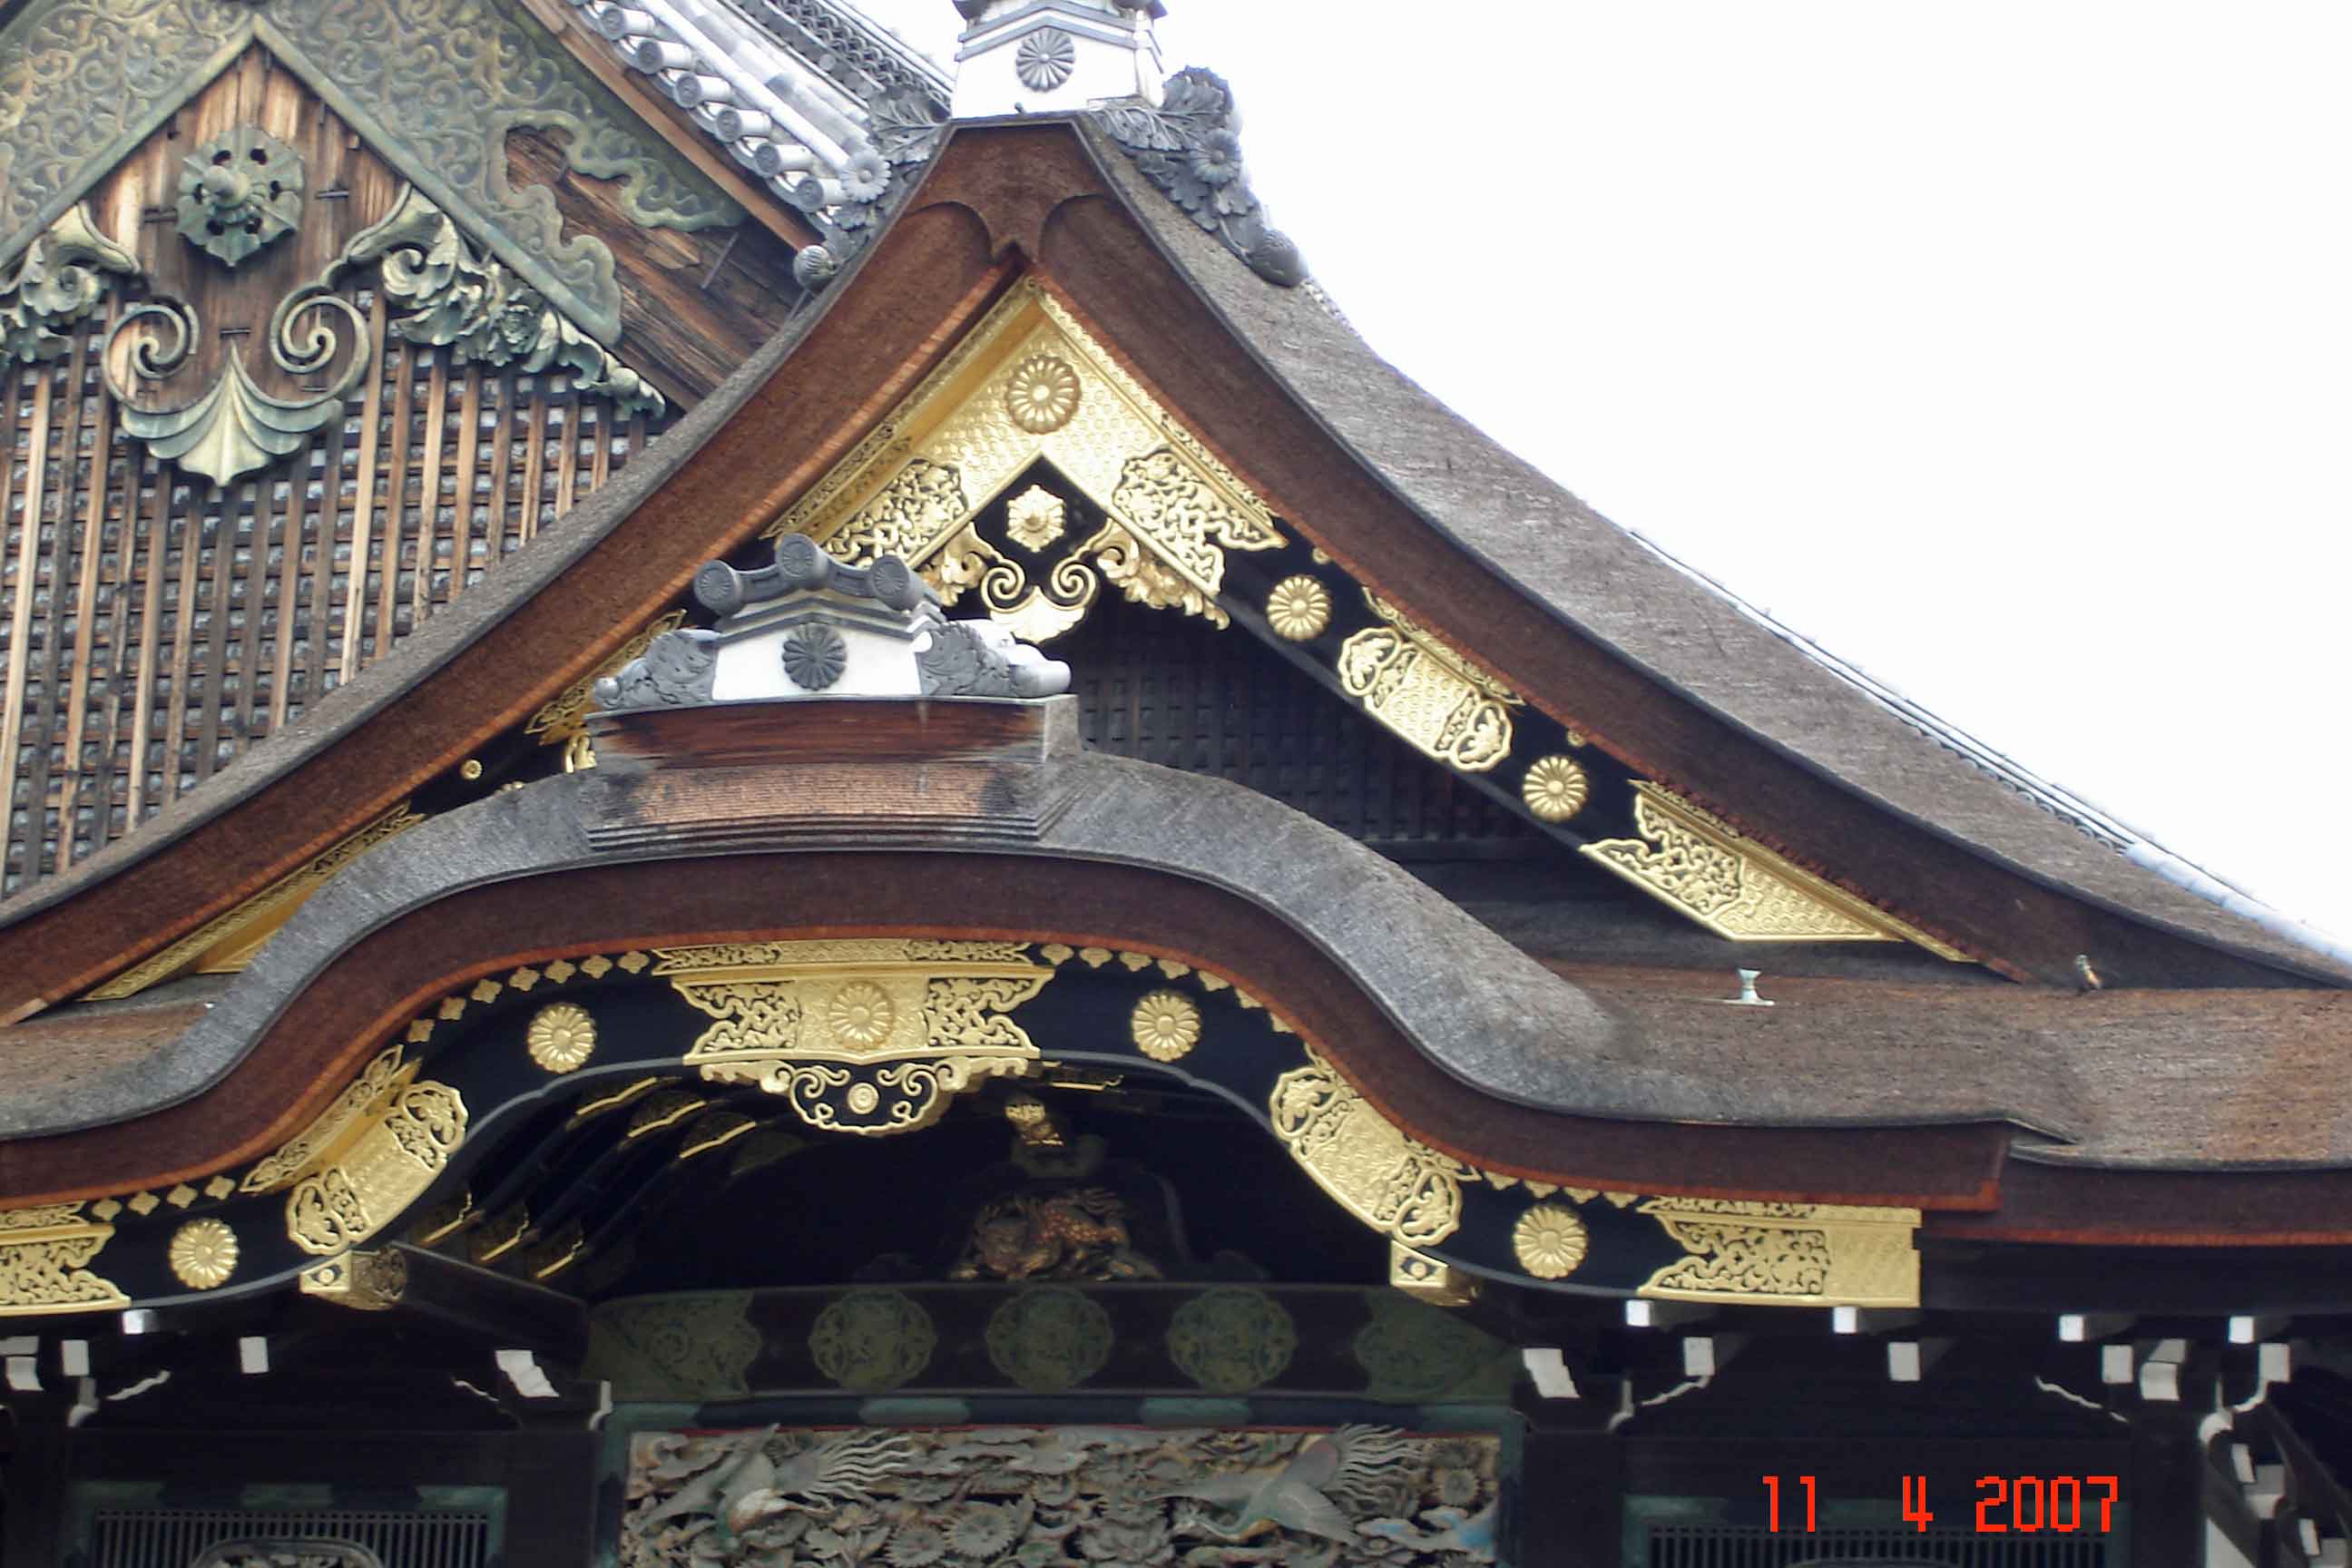 Ninomaru Palace lavish gold decoration on entrance gable